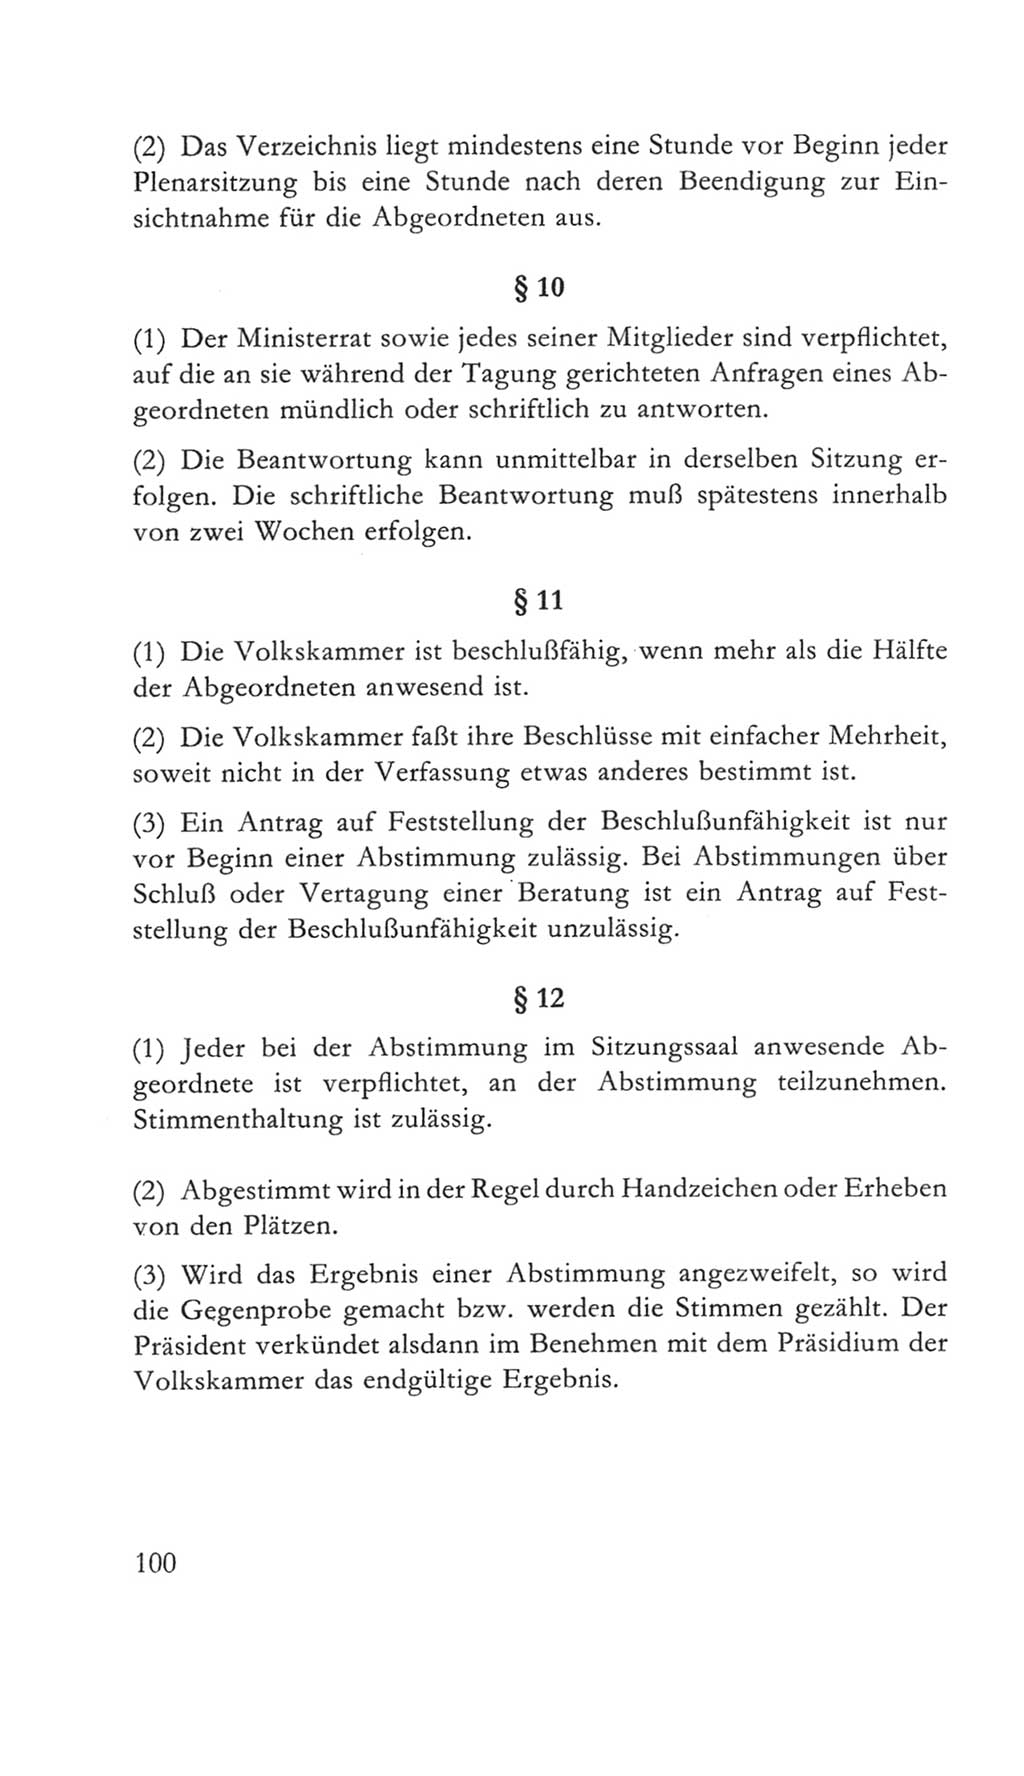 Volkskammer (VK) der Deutschen Demokratischen Republik (DDR) 5. Wahlperiode 1967-1971, Seite 100 (VK. DDR 5. WP. 1967-1971, S. 100)